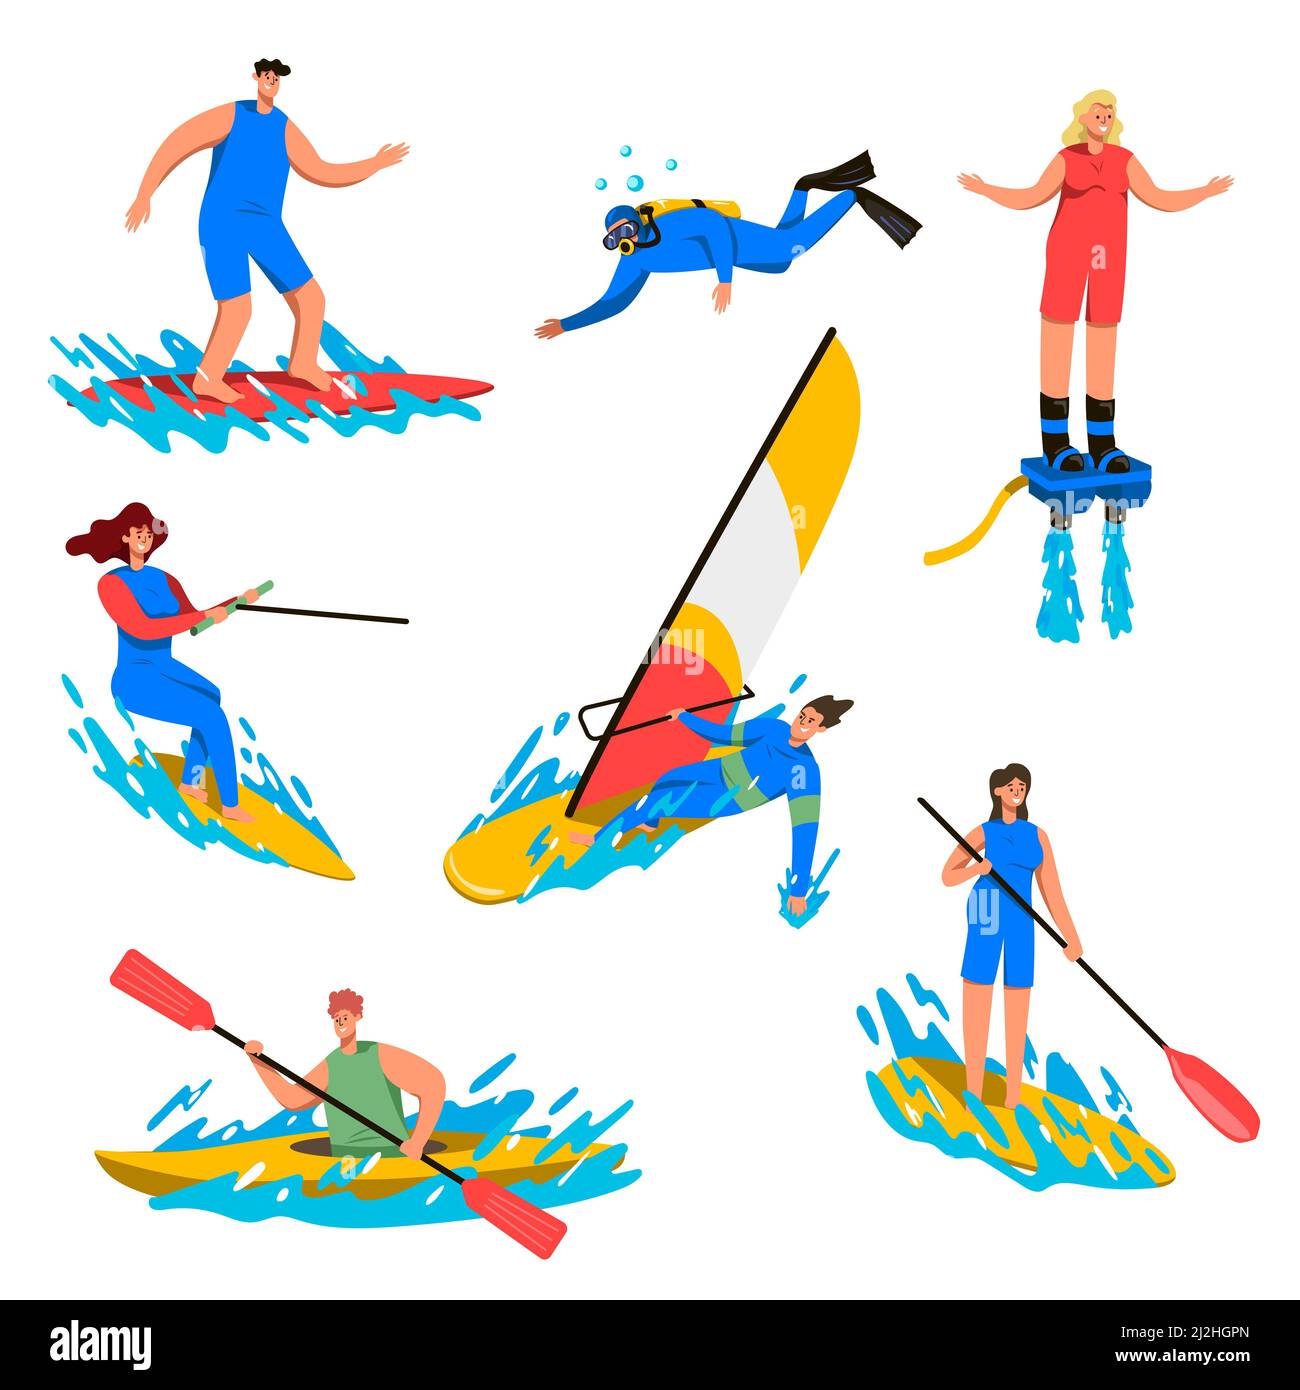 Wassersport Cartoon Vektor Illustration Set. Menschen, die auf weißem Hintergrund tauchen, surfen, Windsurfen, Kanu fahren. Sommerurlaub, Stock Vektor